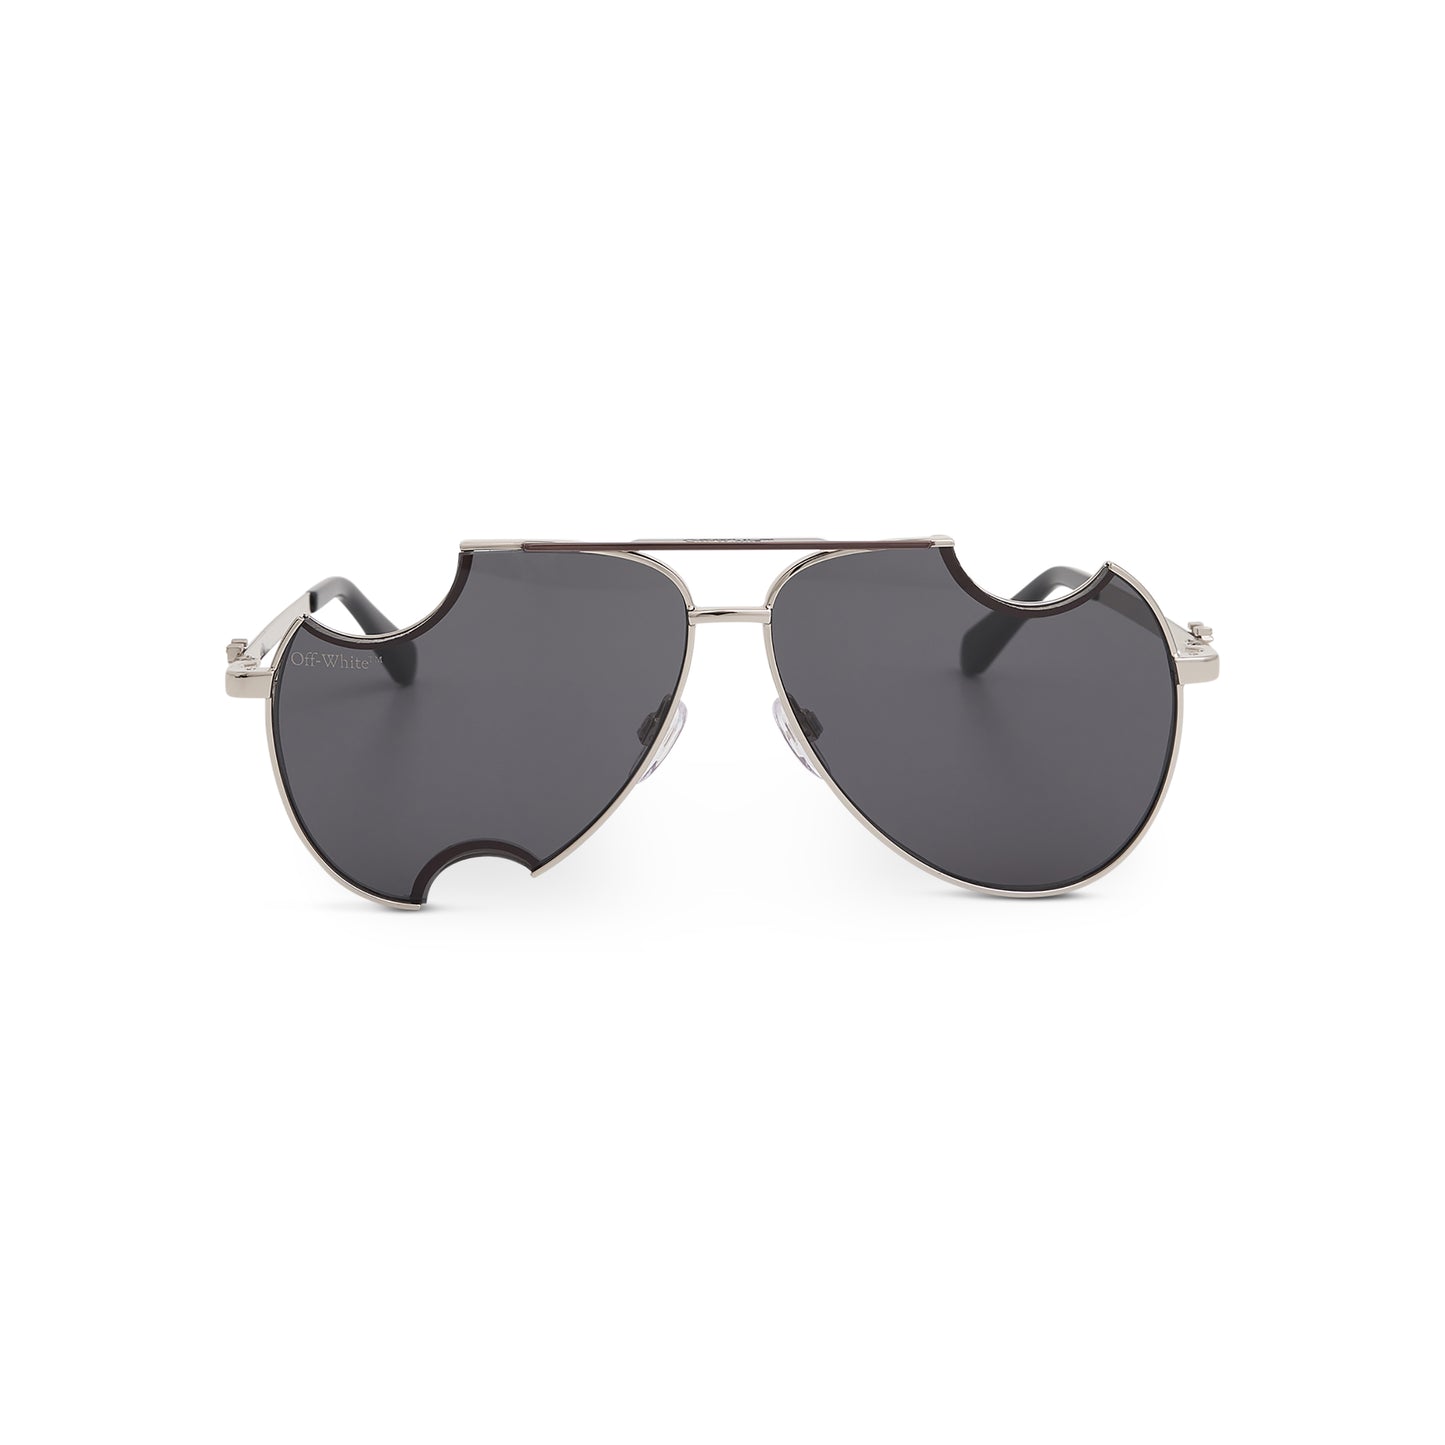 Dallas Sunglasses in Silver/Dark Grey